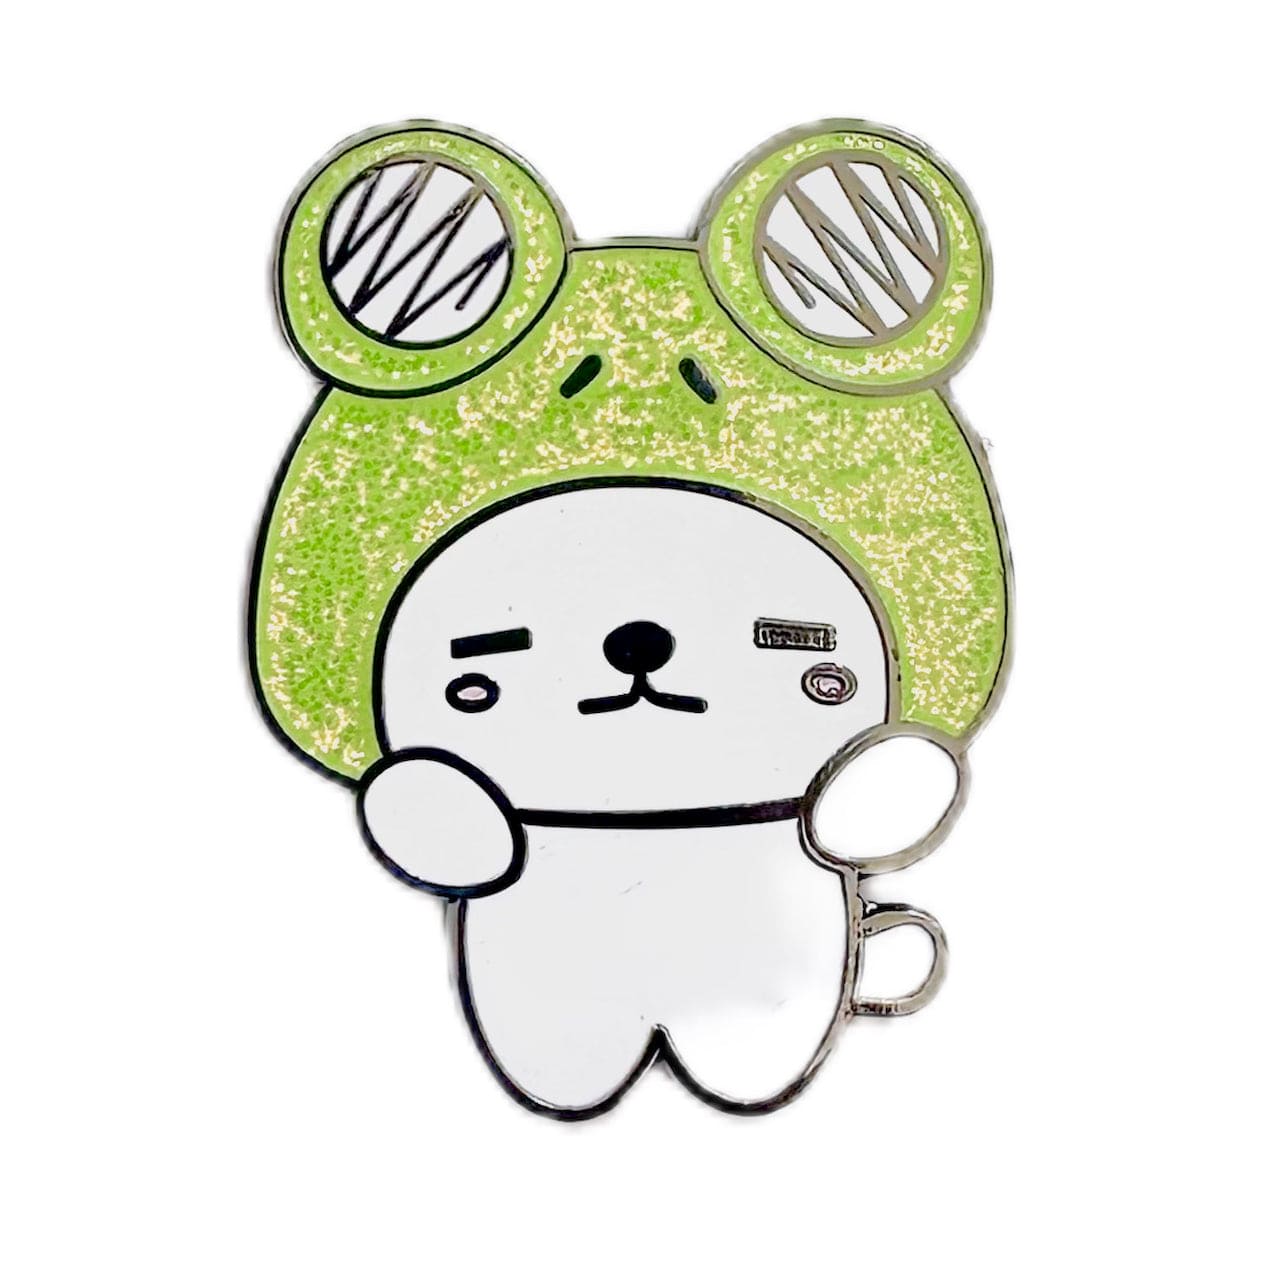 Pinbuds Enamel pin Frog dog pin - Mori Ken from Tokyo prefecture(Japan Mascot collection)